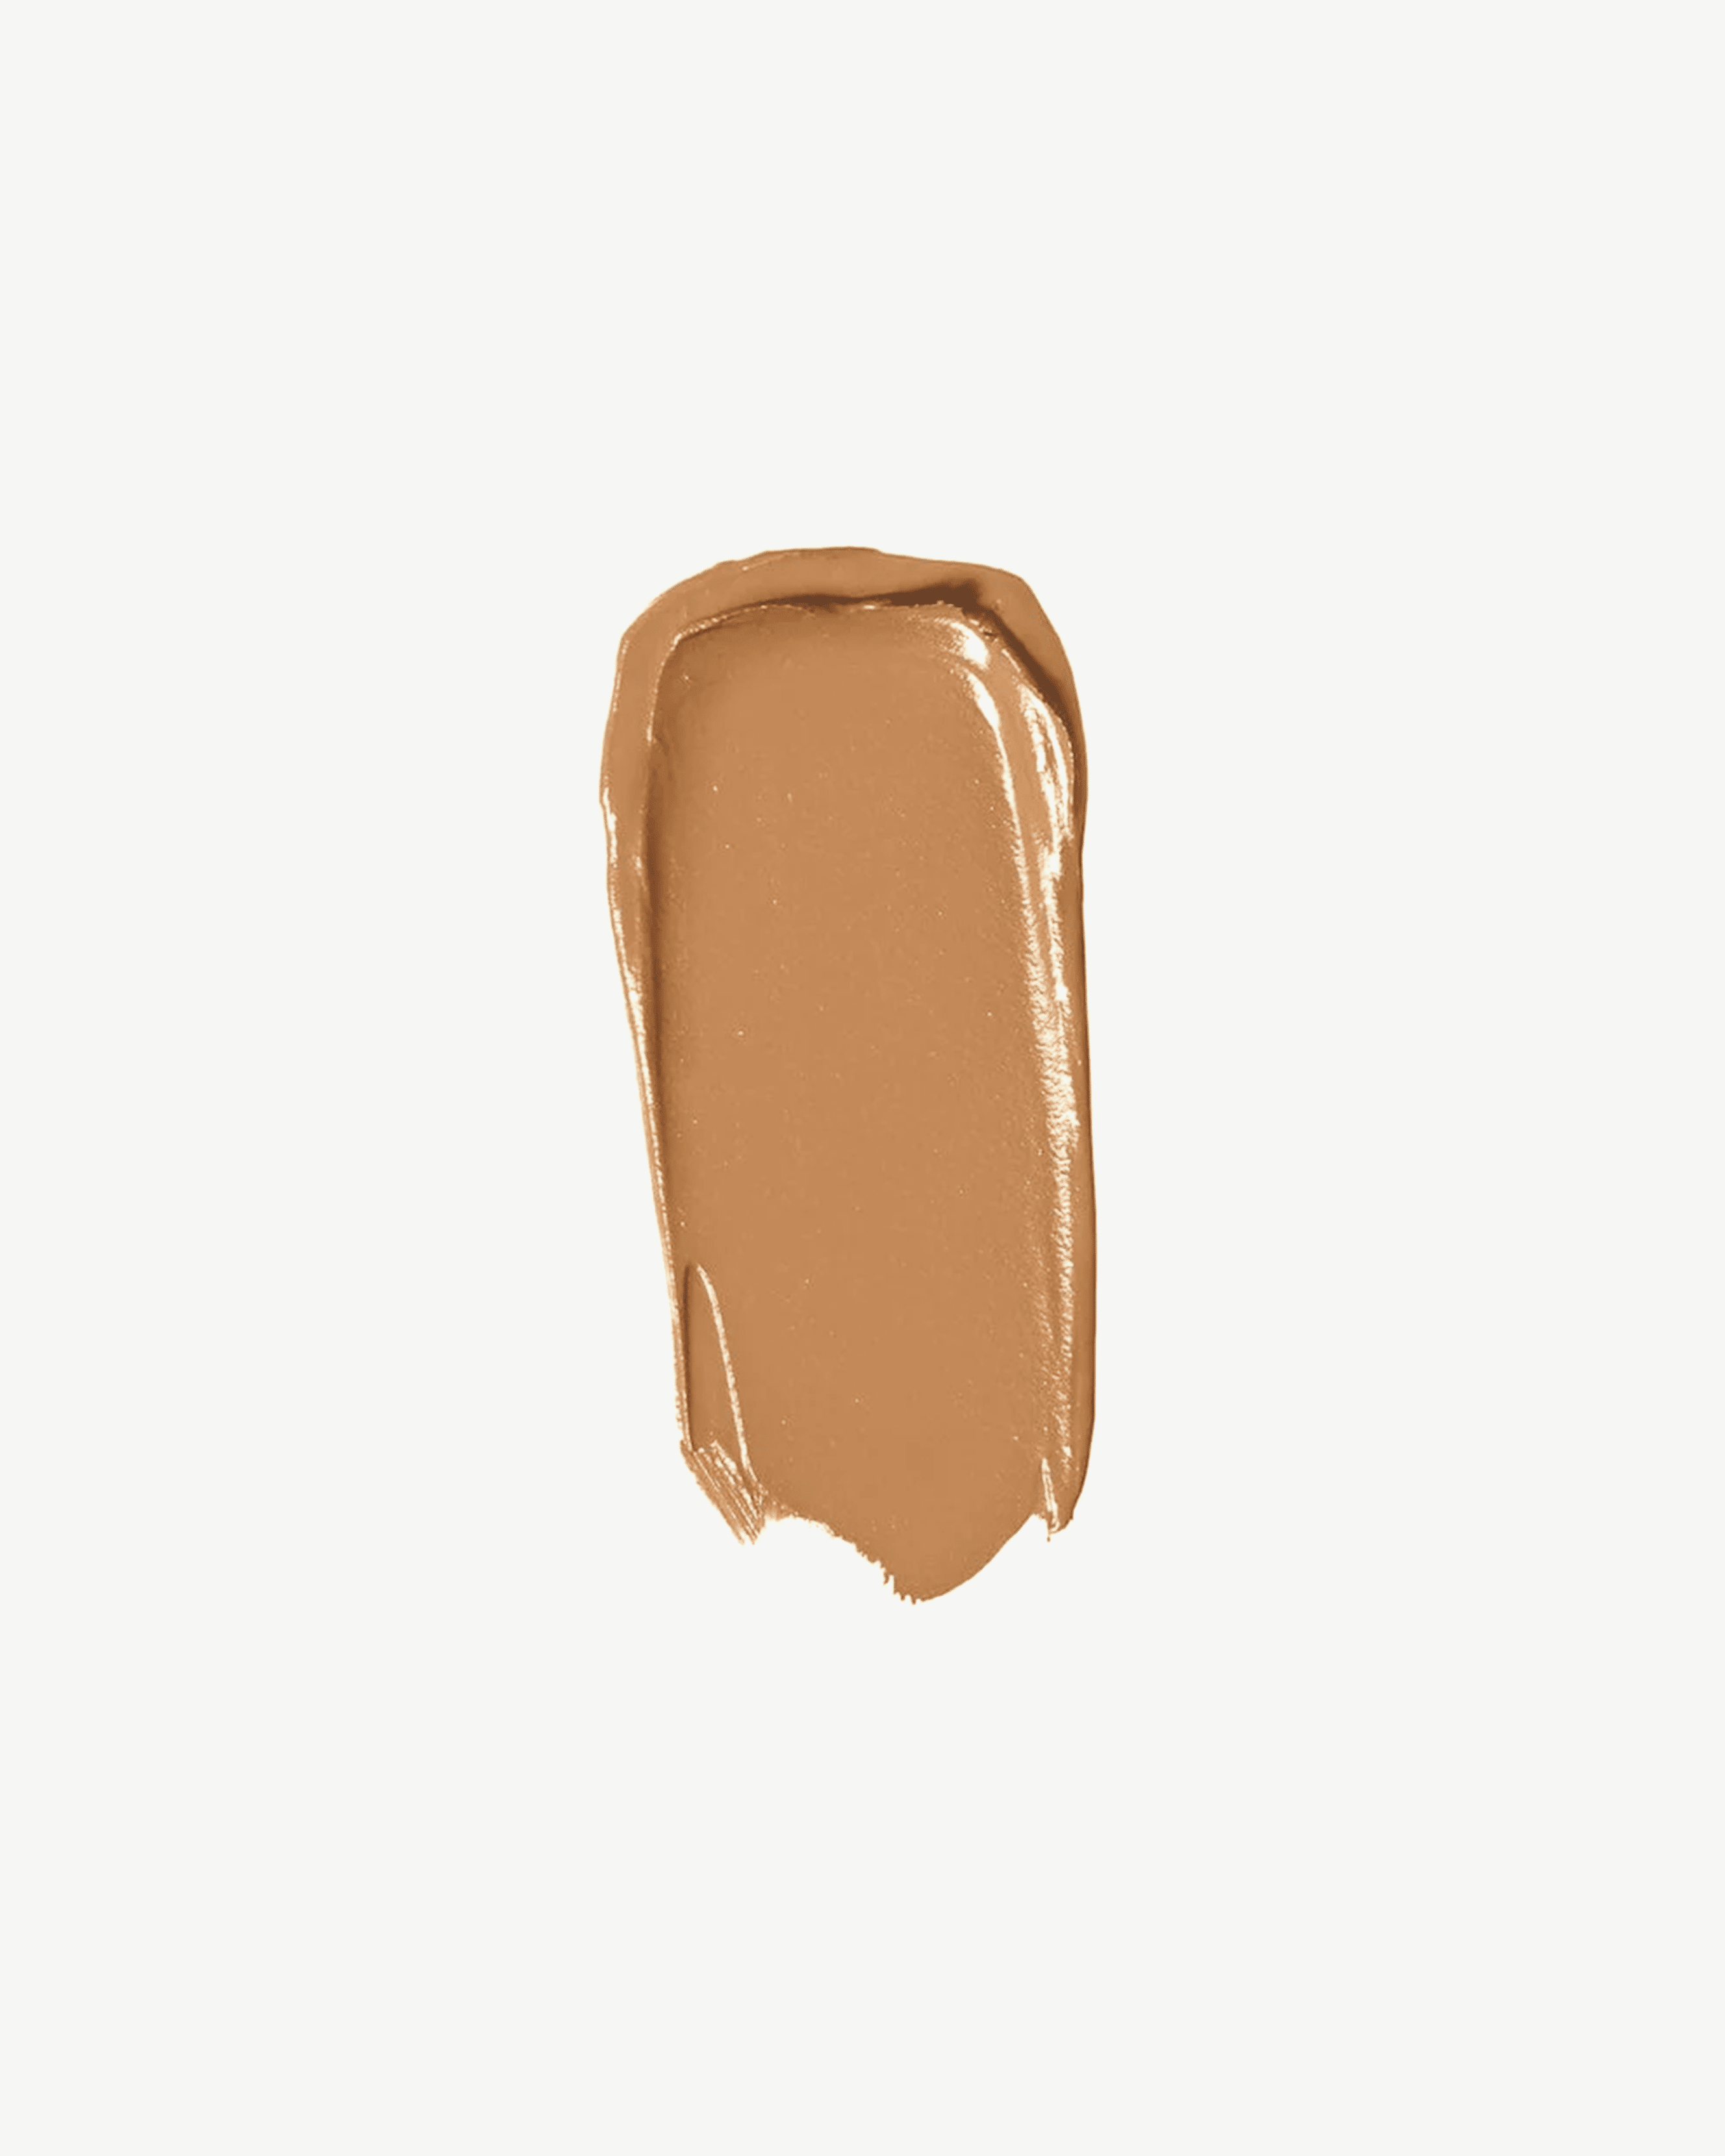 Neutral 80 (medium brown with neutral undertones)